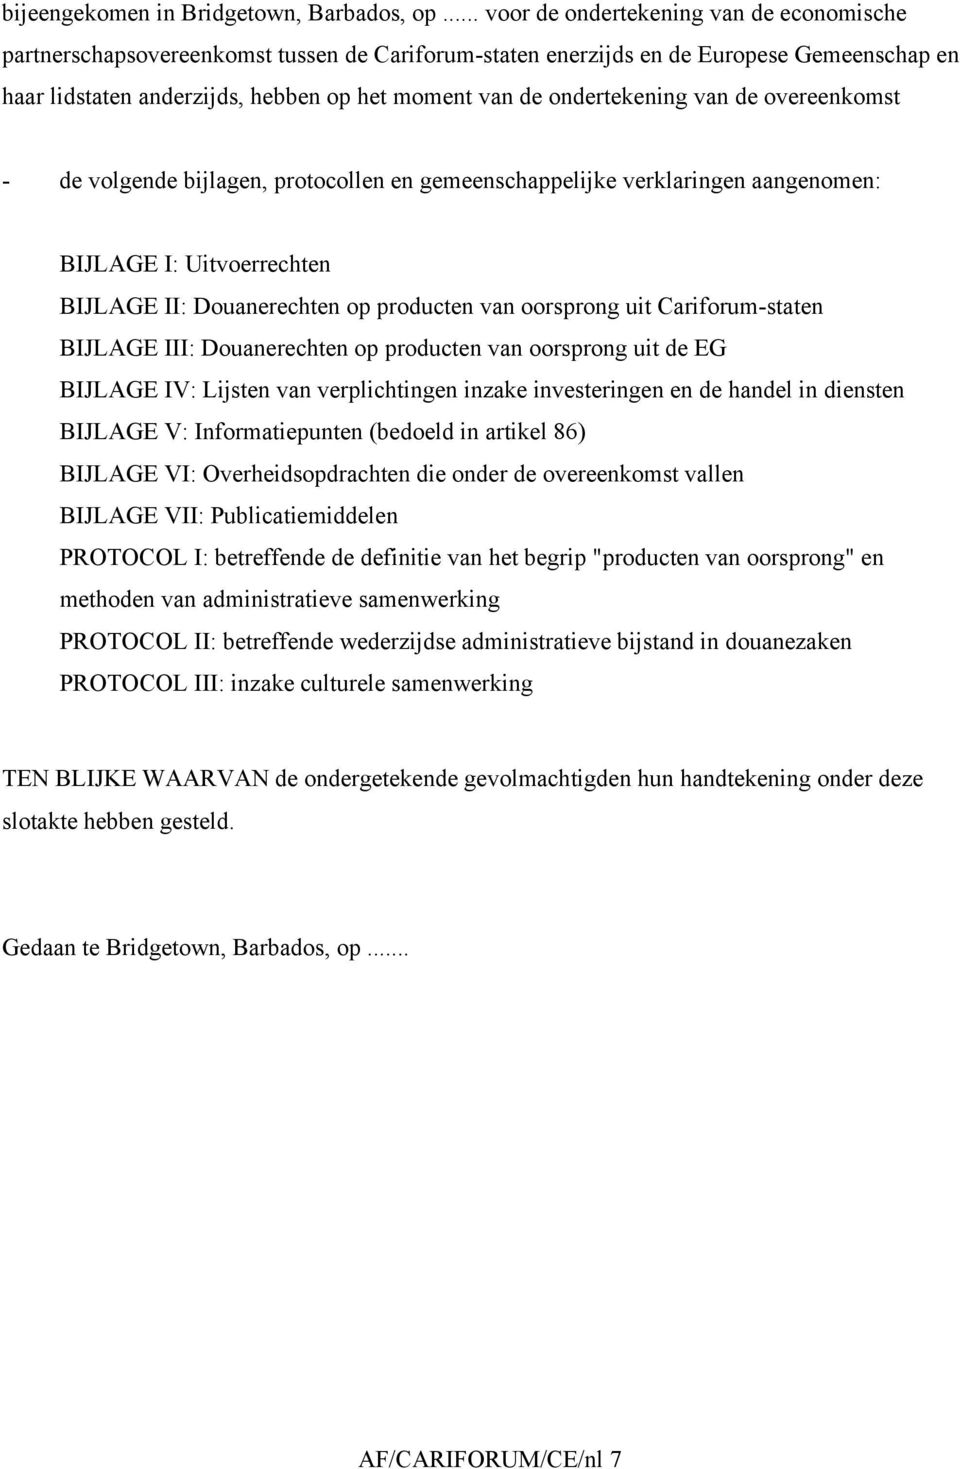 ondertekening van de overeenkomst - de volgende bijlagen, protocollen en gemeenschappelijke verklaringen aangenomen: BIJLAGE I: Uitvoerrechten BIJLAGE II: Douanerechten op producten van oorsprong uit